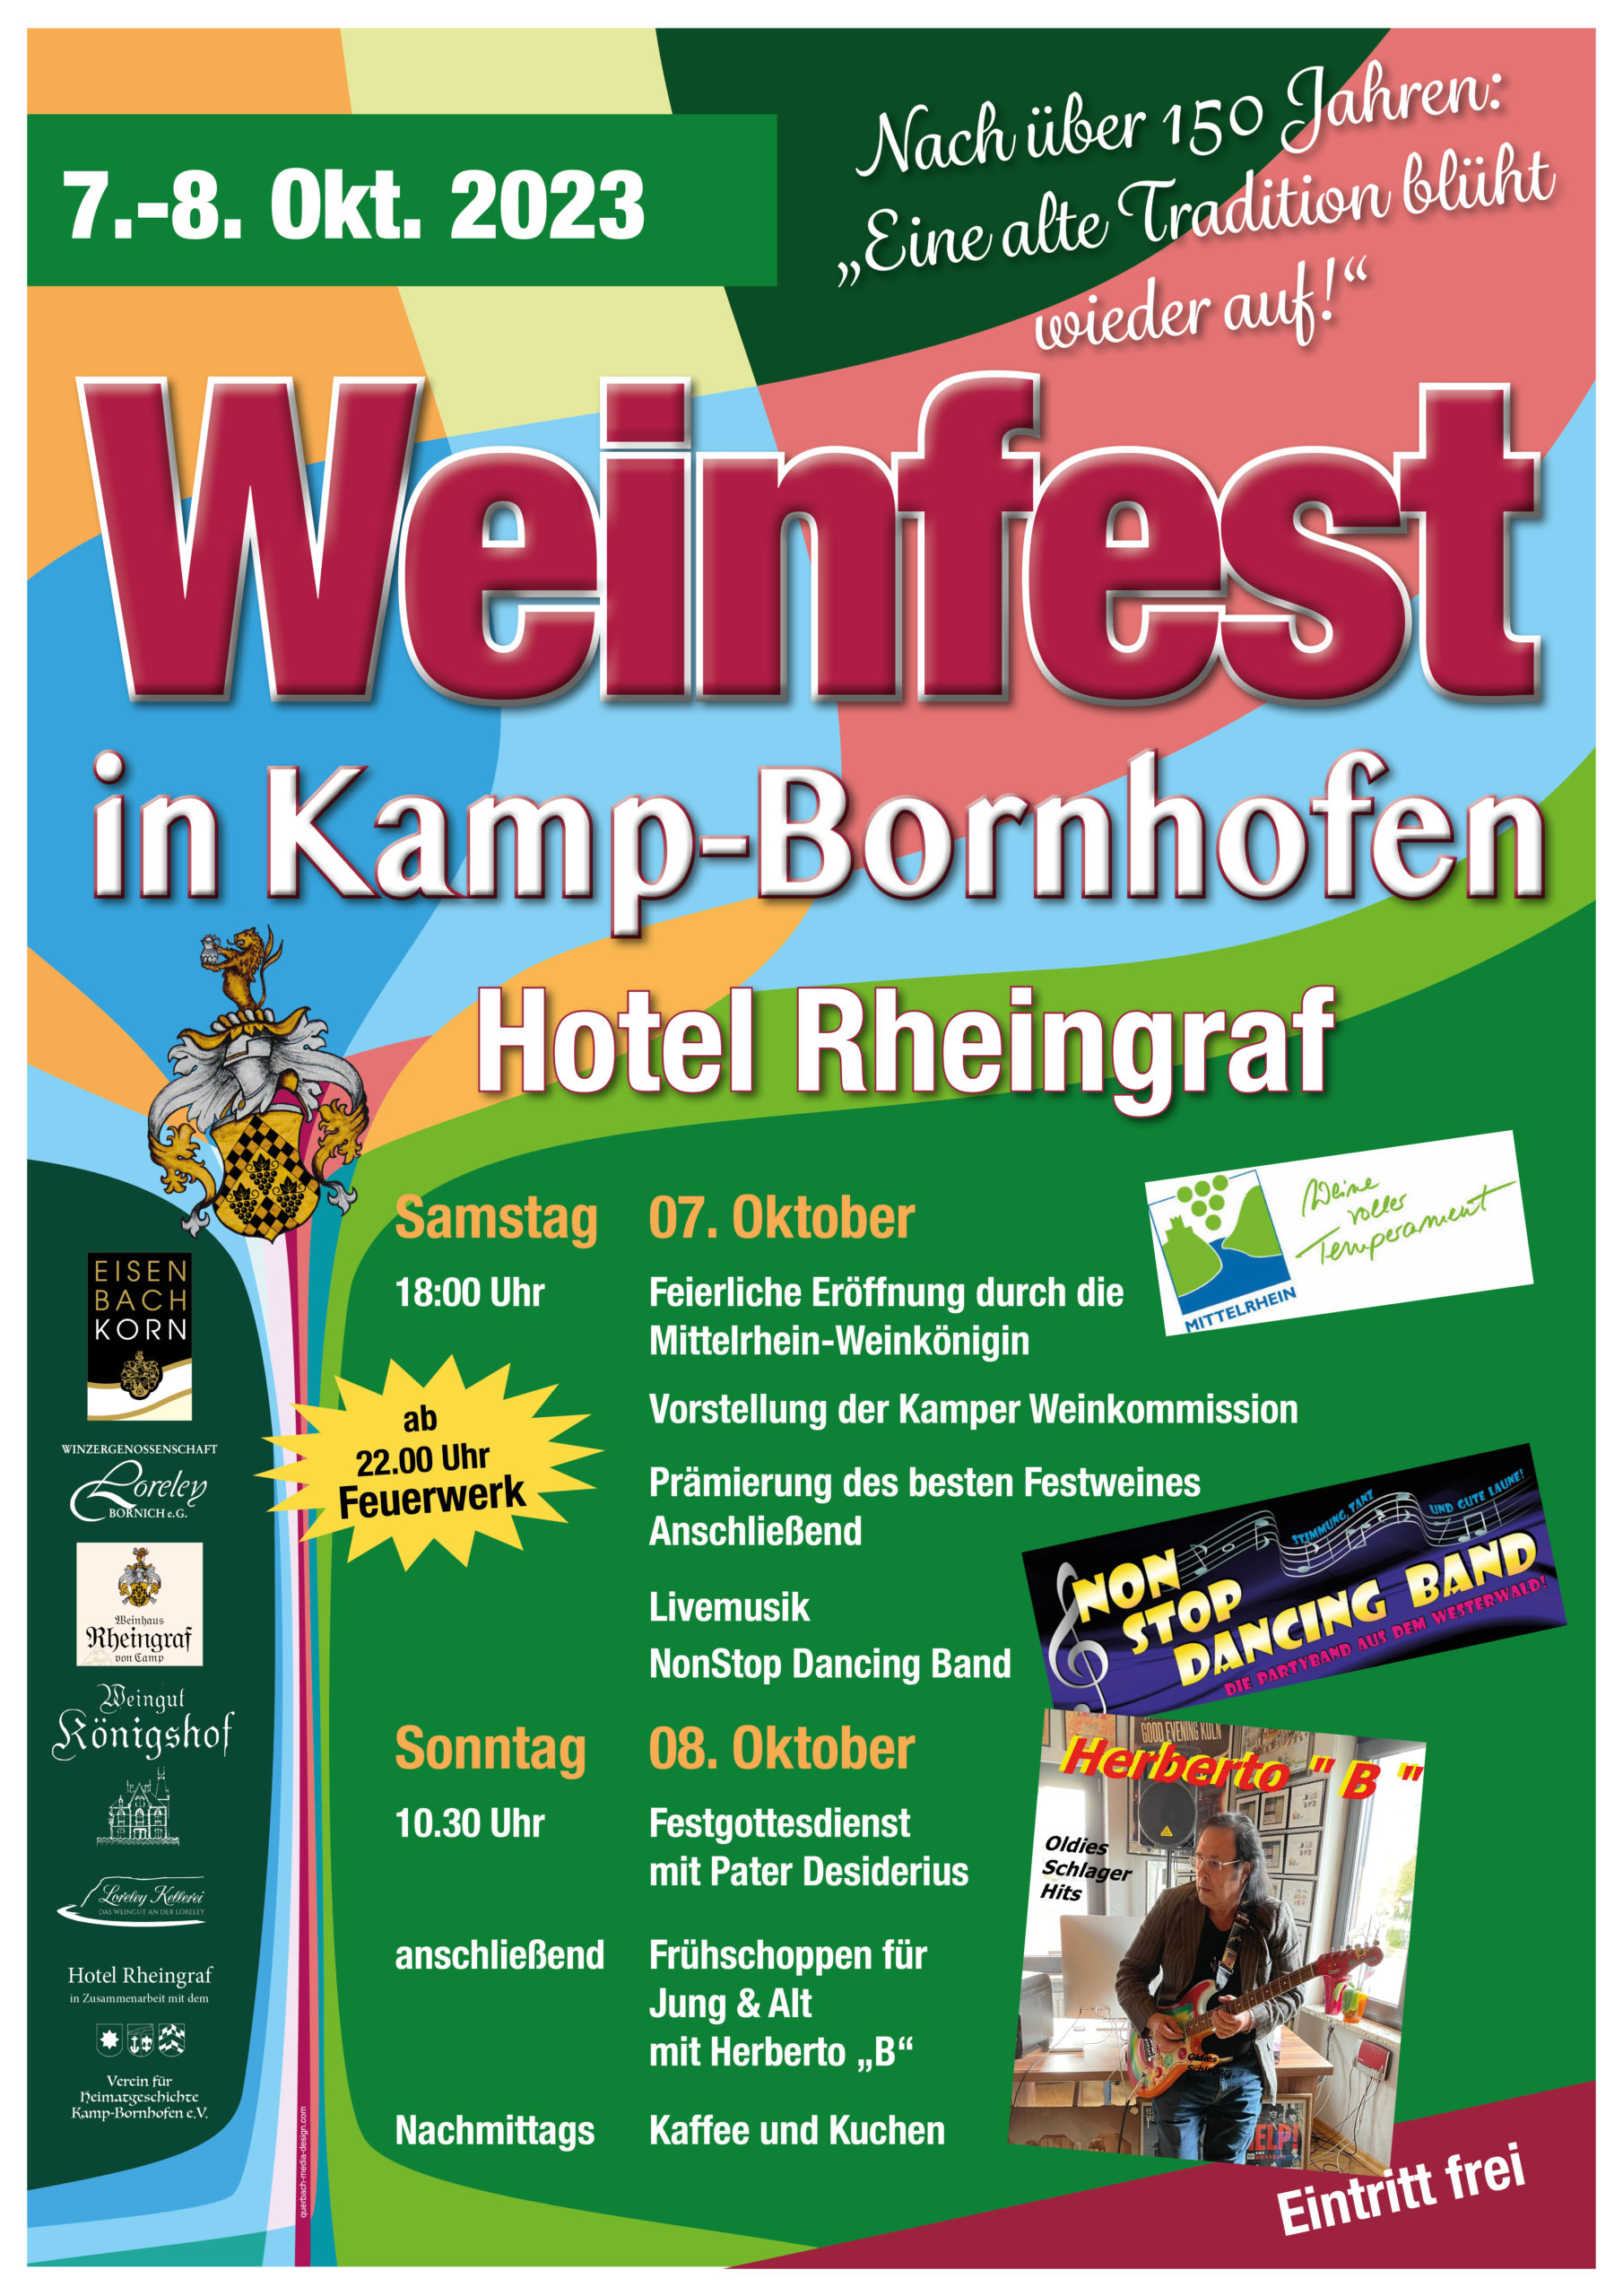 Weinfest in Kamp-Bornhofen